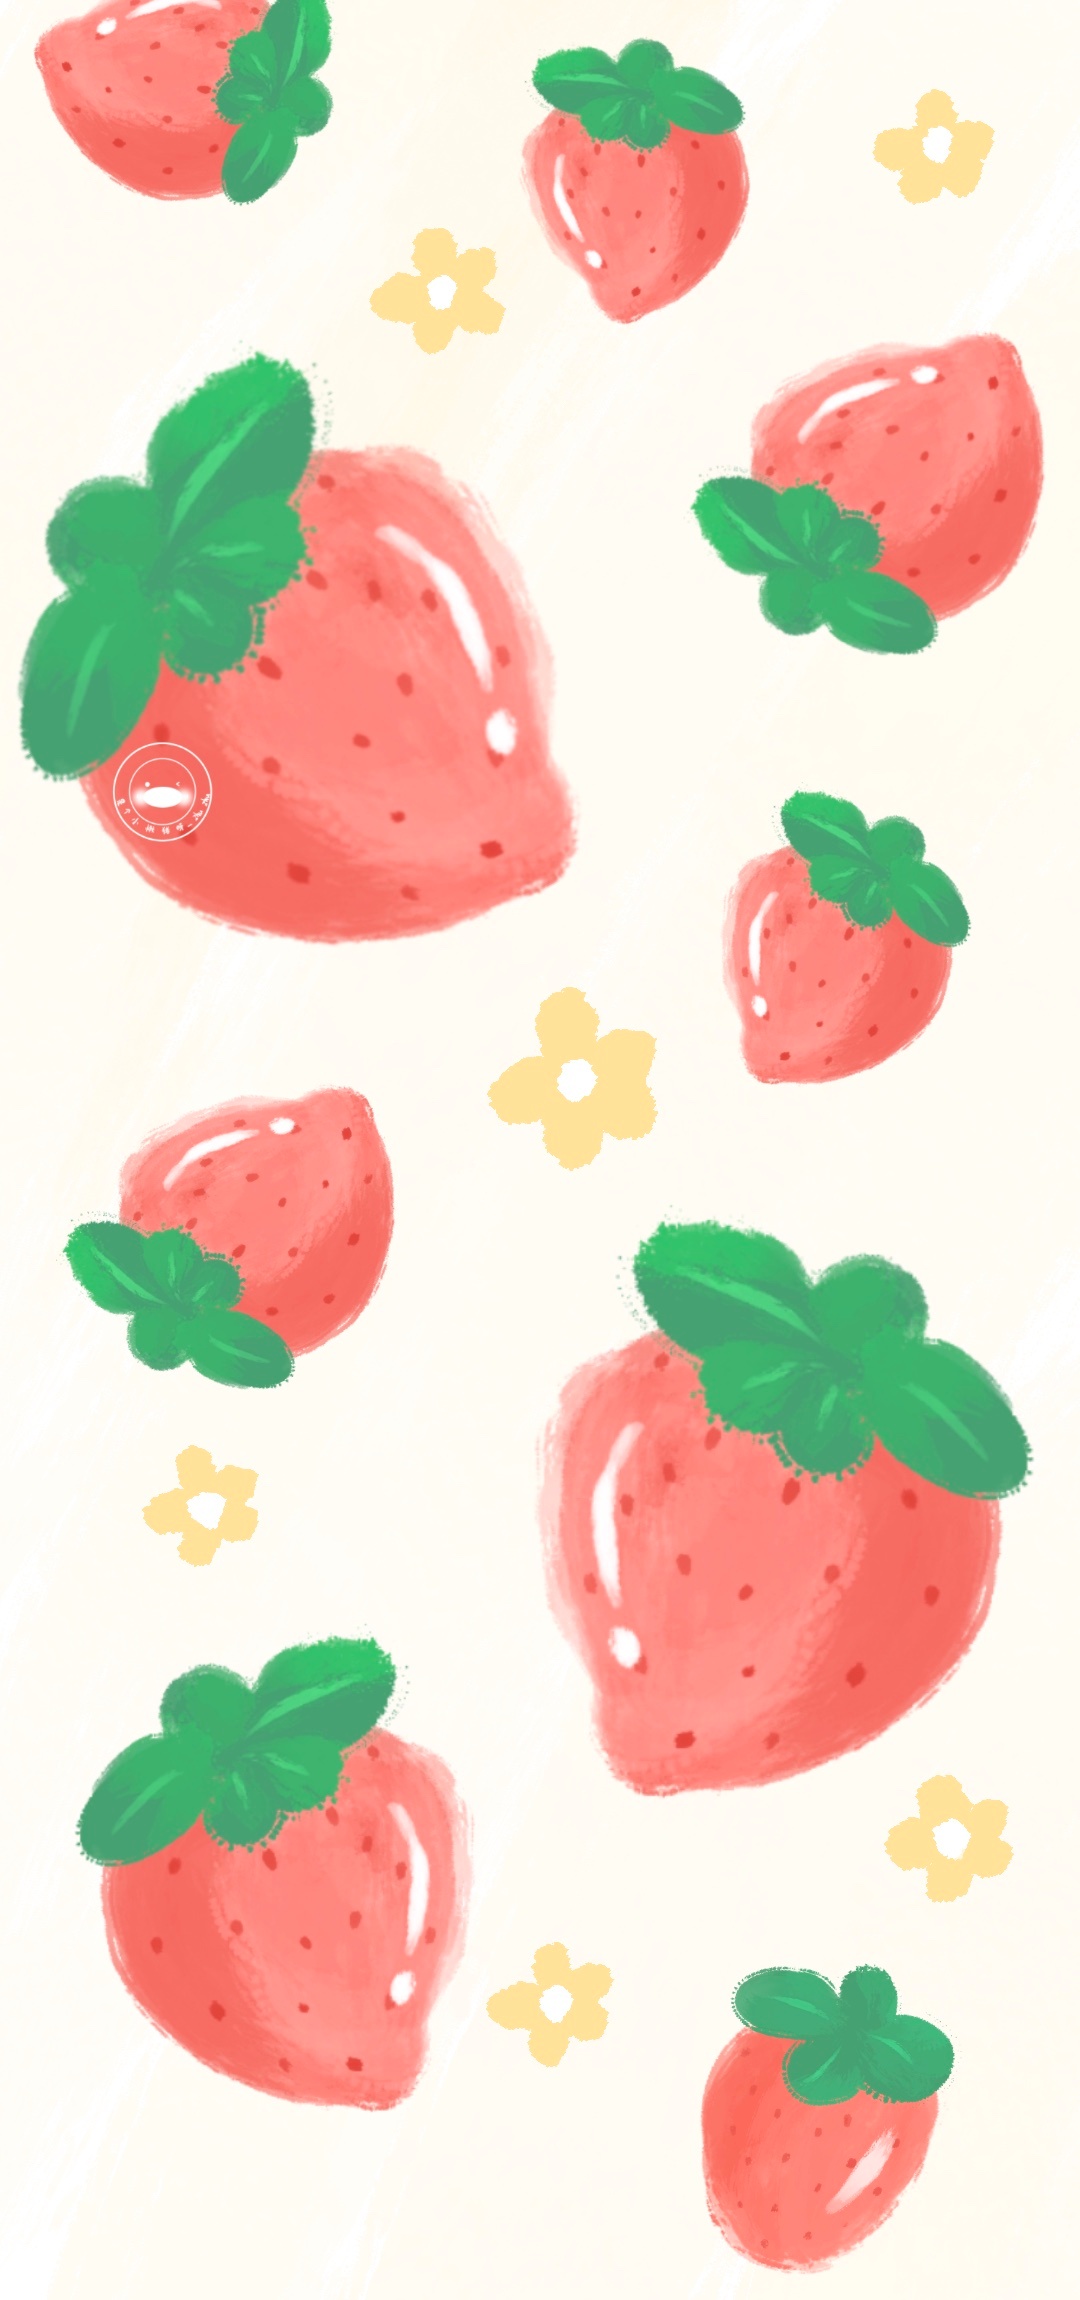 夏日手绘水果壁纸画师:是个小懒猪呀